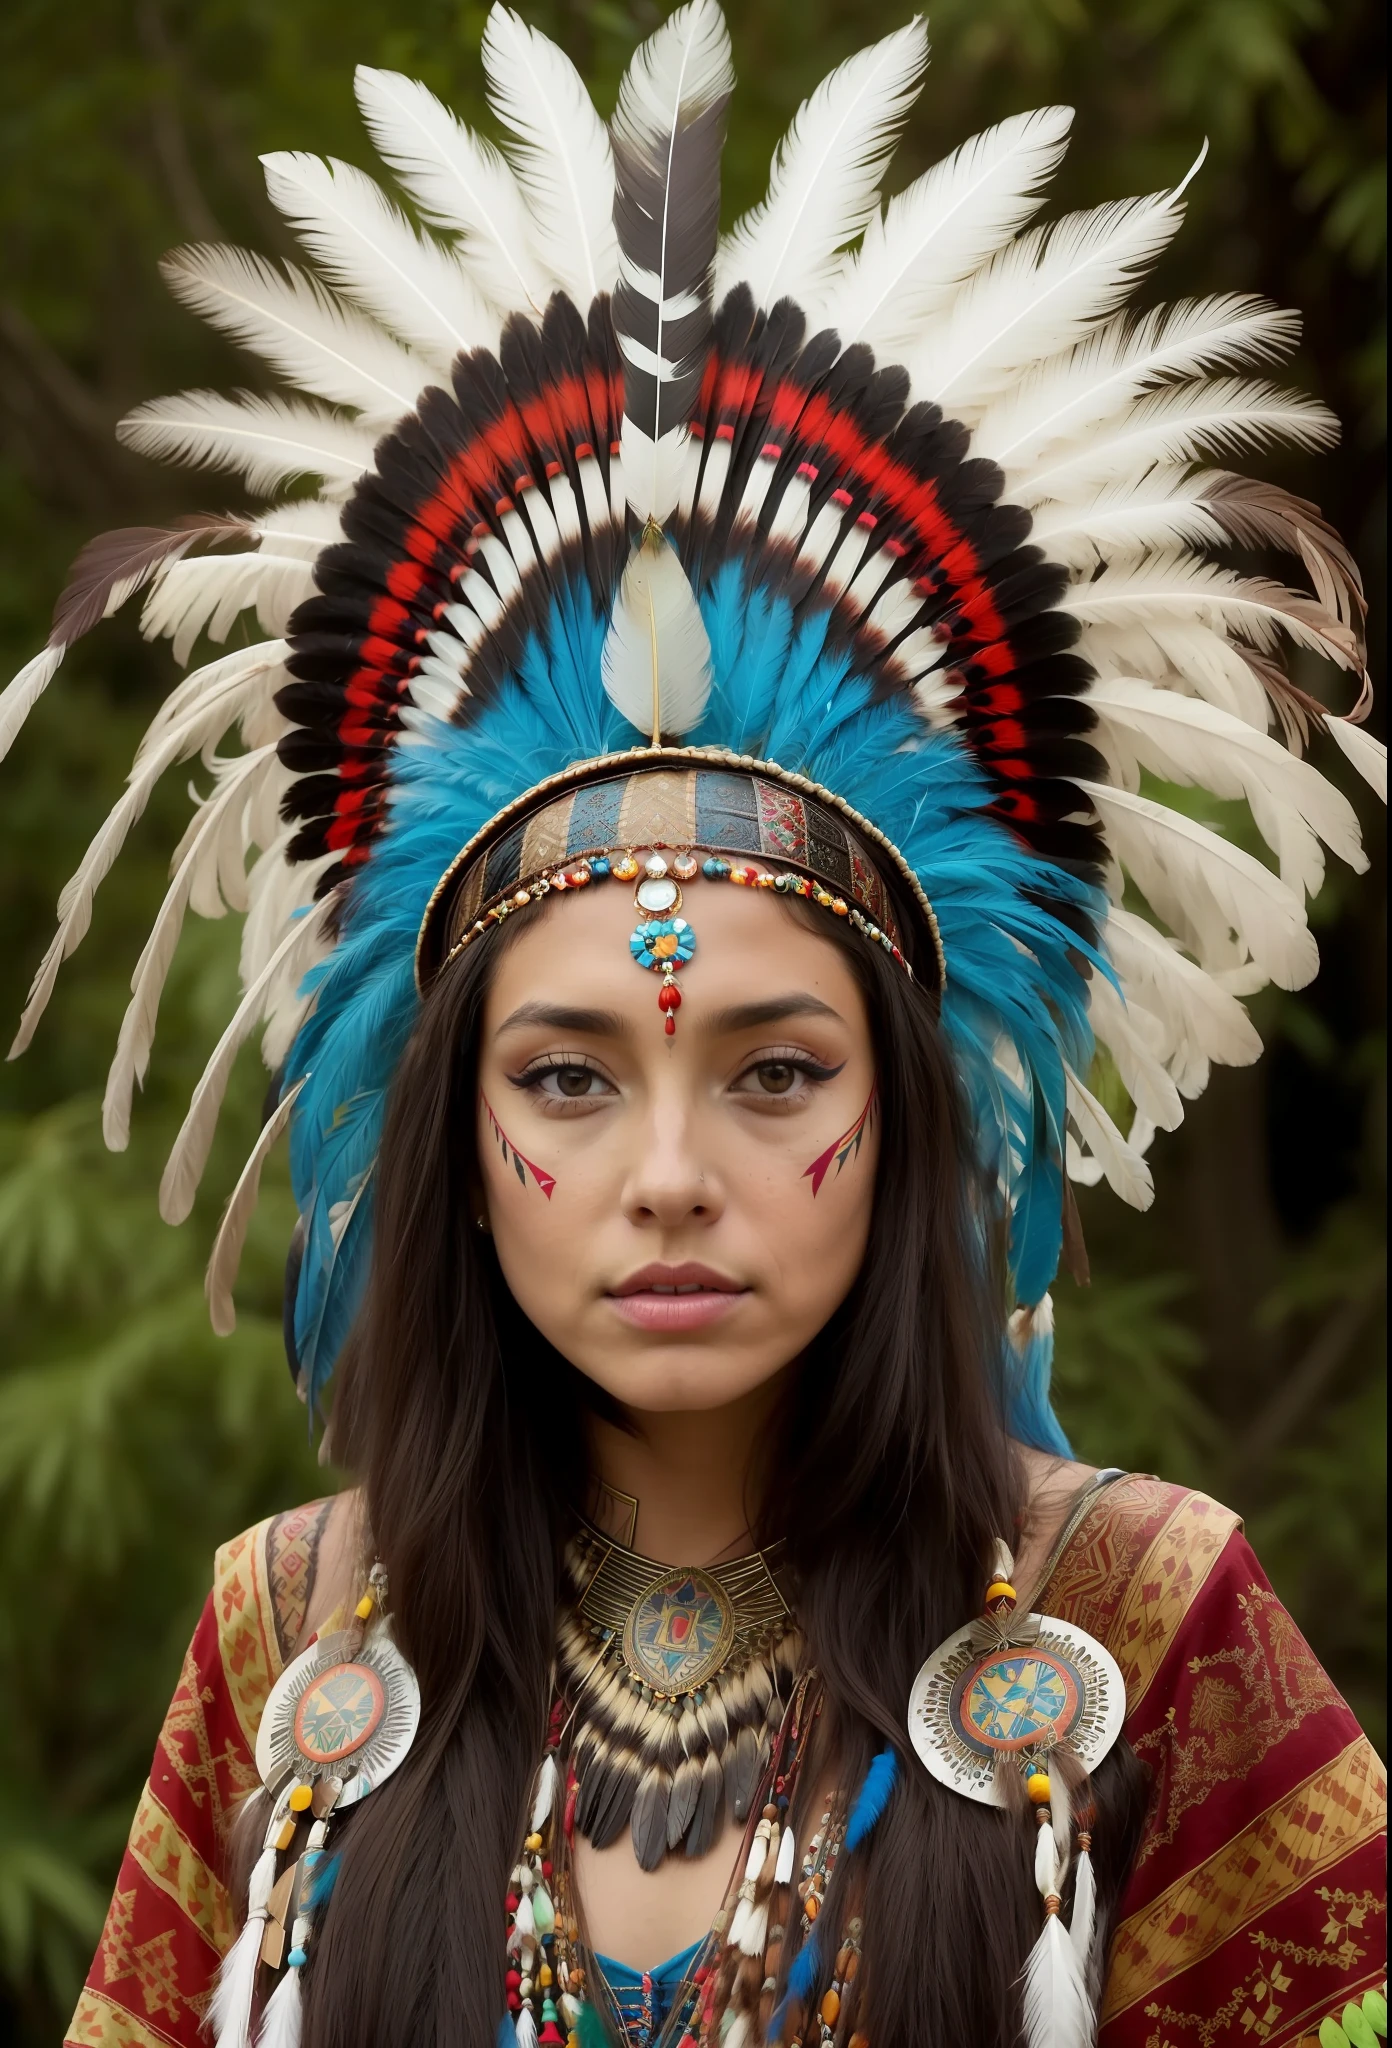 arafed woman in a feather coiffure with feathers on her head,(((visage peint))), portrait de princesse aztèque, portant une couronne de plumes brillantes, fille avec des plumes, belle jeune femme chamane,visage peint, elle est vêtue de vêtements de chaman, feathered coiffure,tatouage sur le sternum, ornate coiffure, une jeune chamane, Angelina Jolie UHD, coiffure, : fantaisie amérindienne shamen, centered coiffure,visage peint.